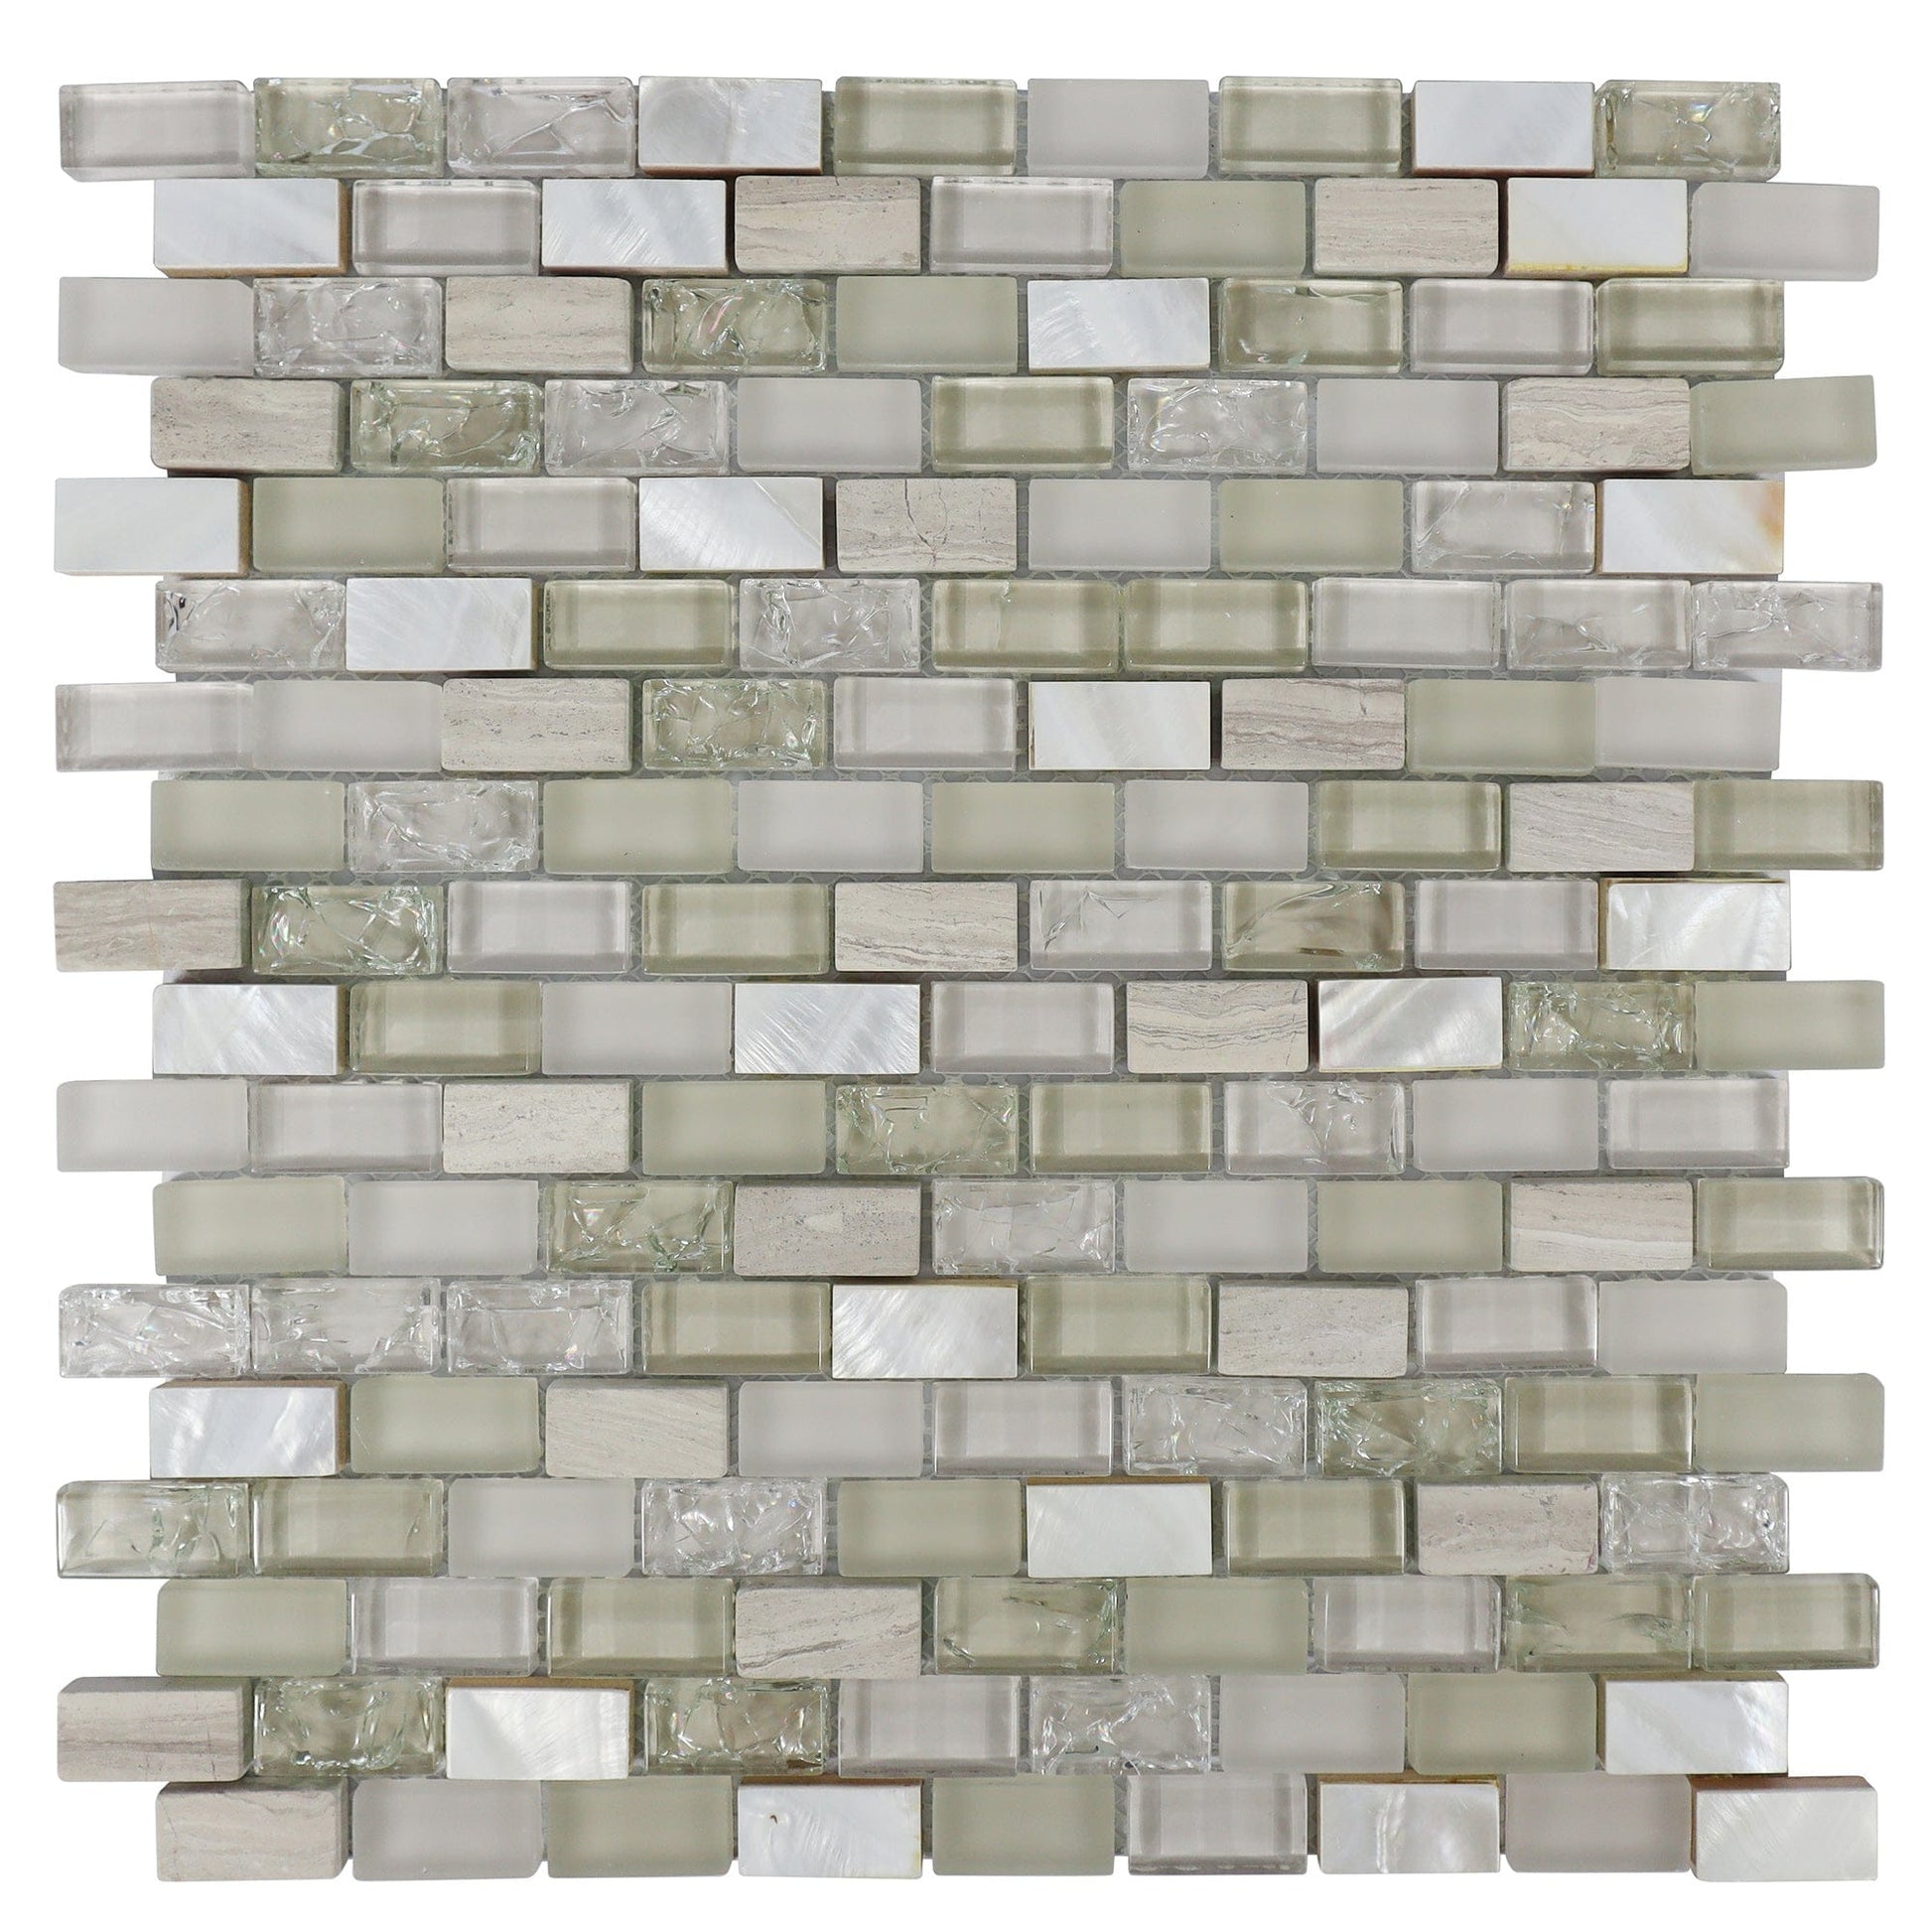 Chery Tile Inc Home & Garden Blend Stone Mosaic Tile, Mini Brick Shell Serie Tile